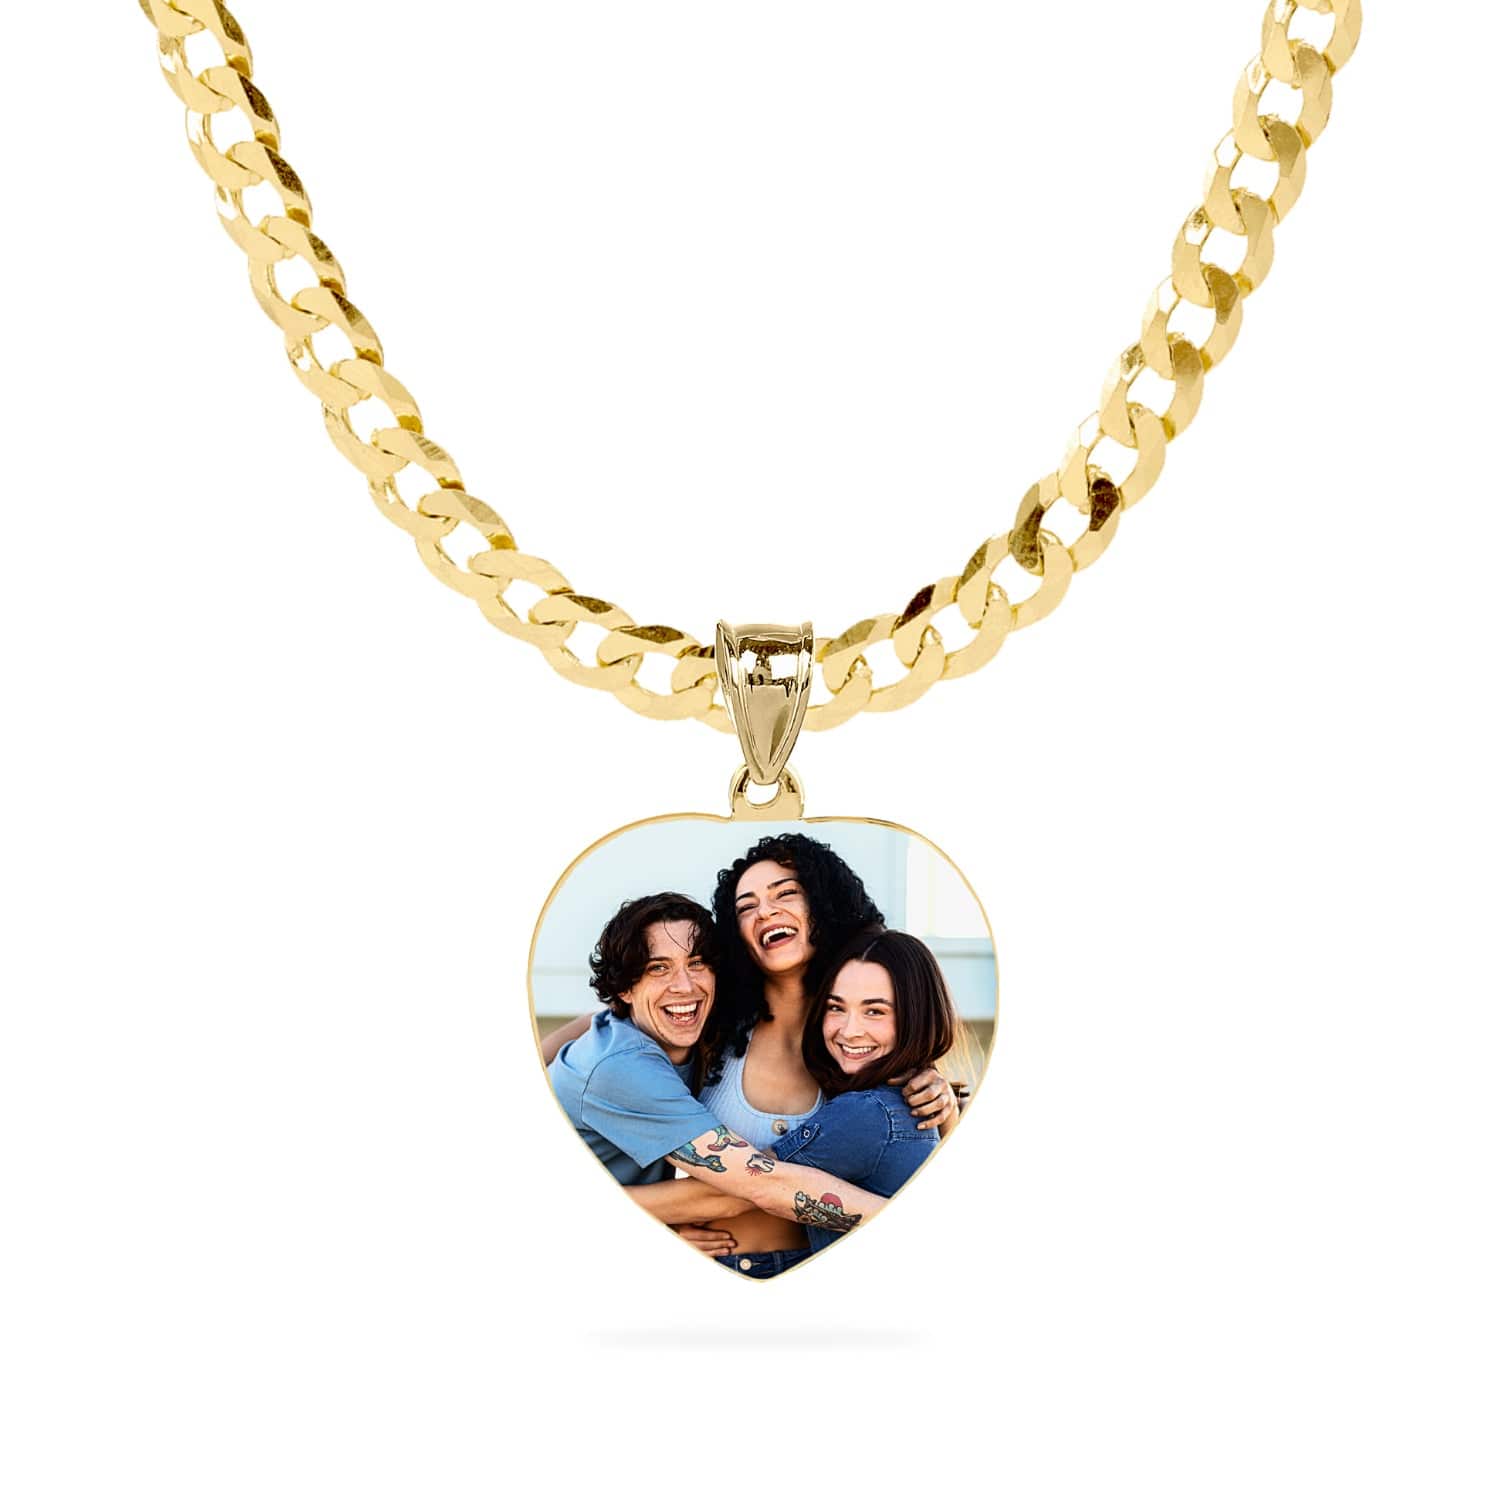 Colors / Gold Tone / Cuban Chain Personalized Portrait Necklace